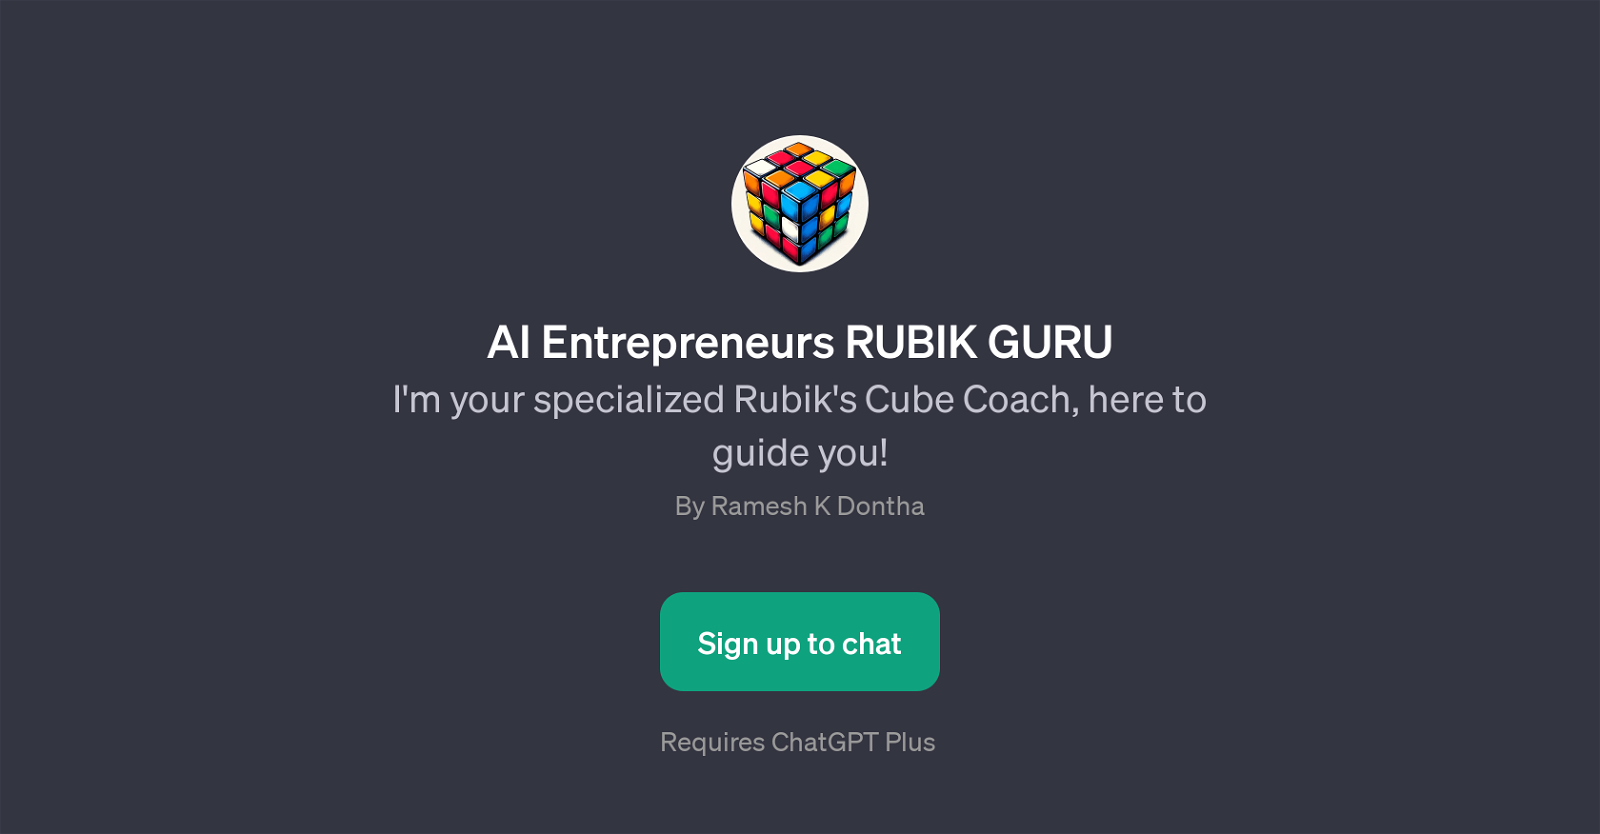 AI Entrepreneurs RUBIK GURU website